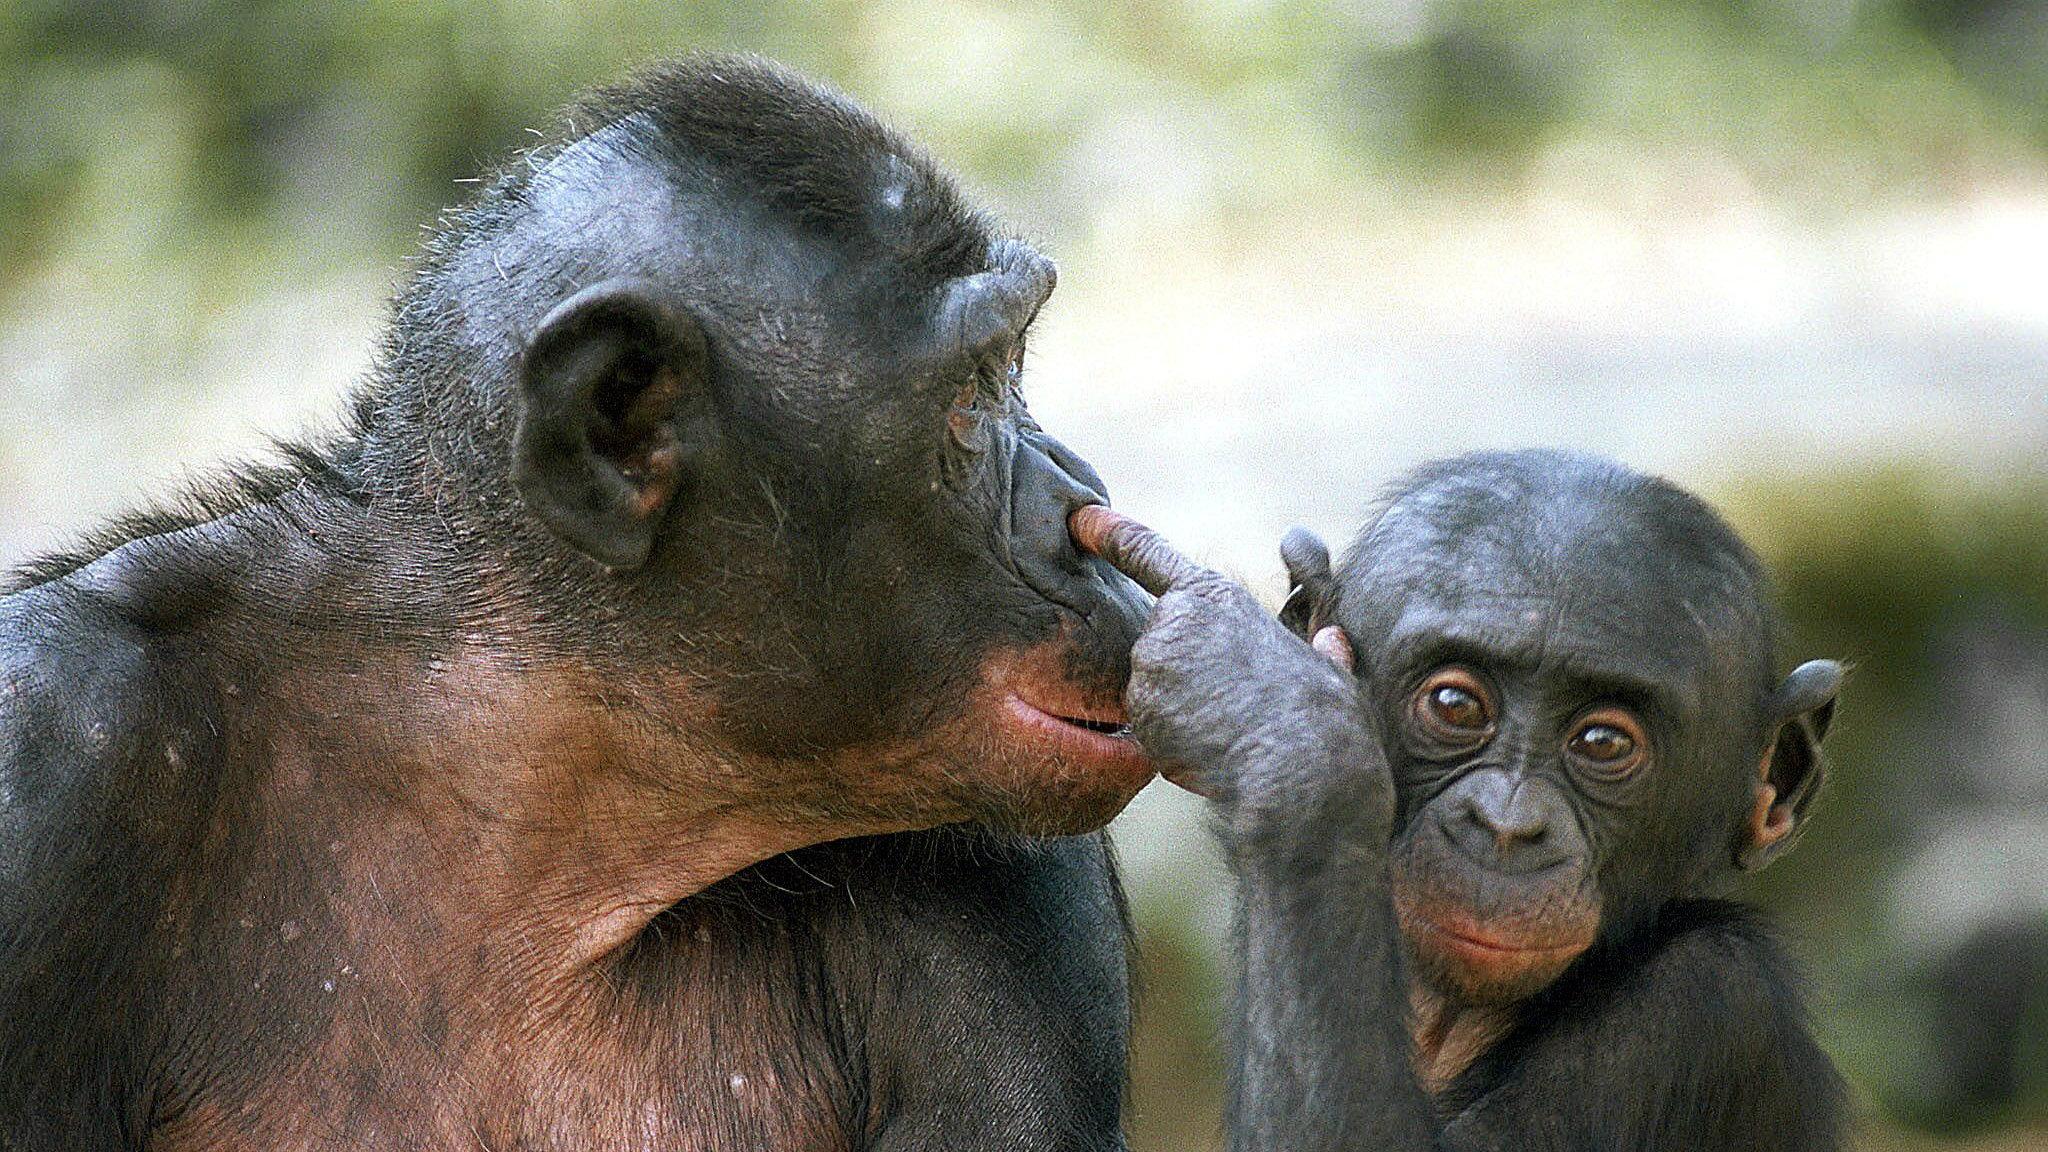 Общение у бонобо сравнили с воплями младенцев